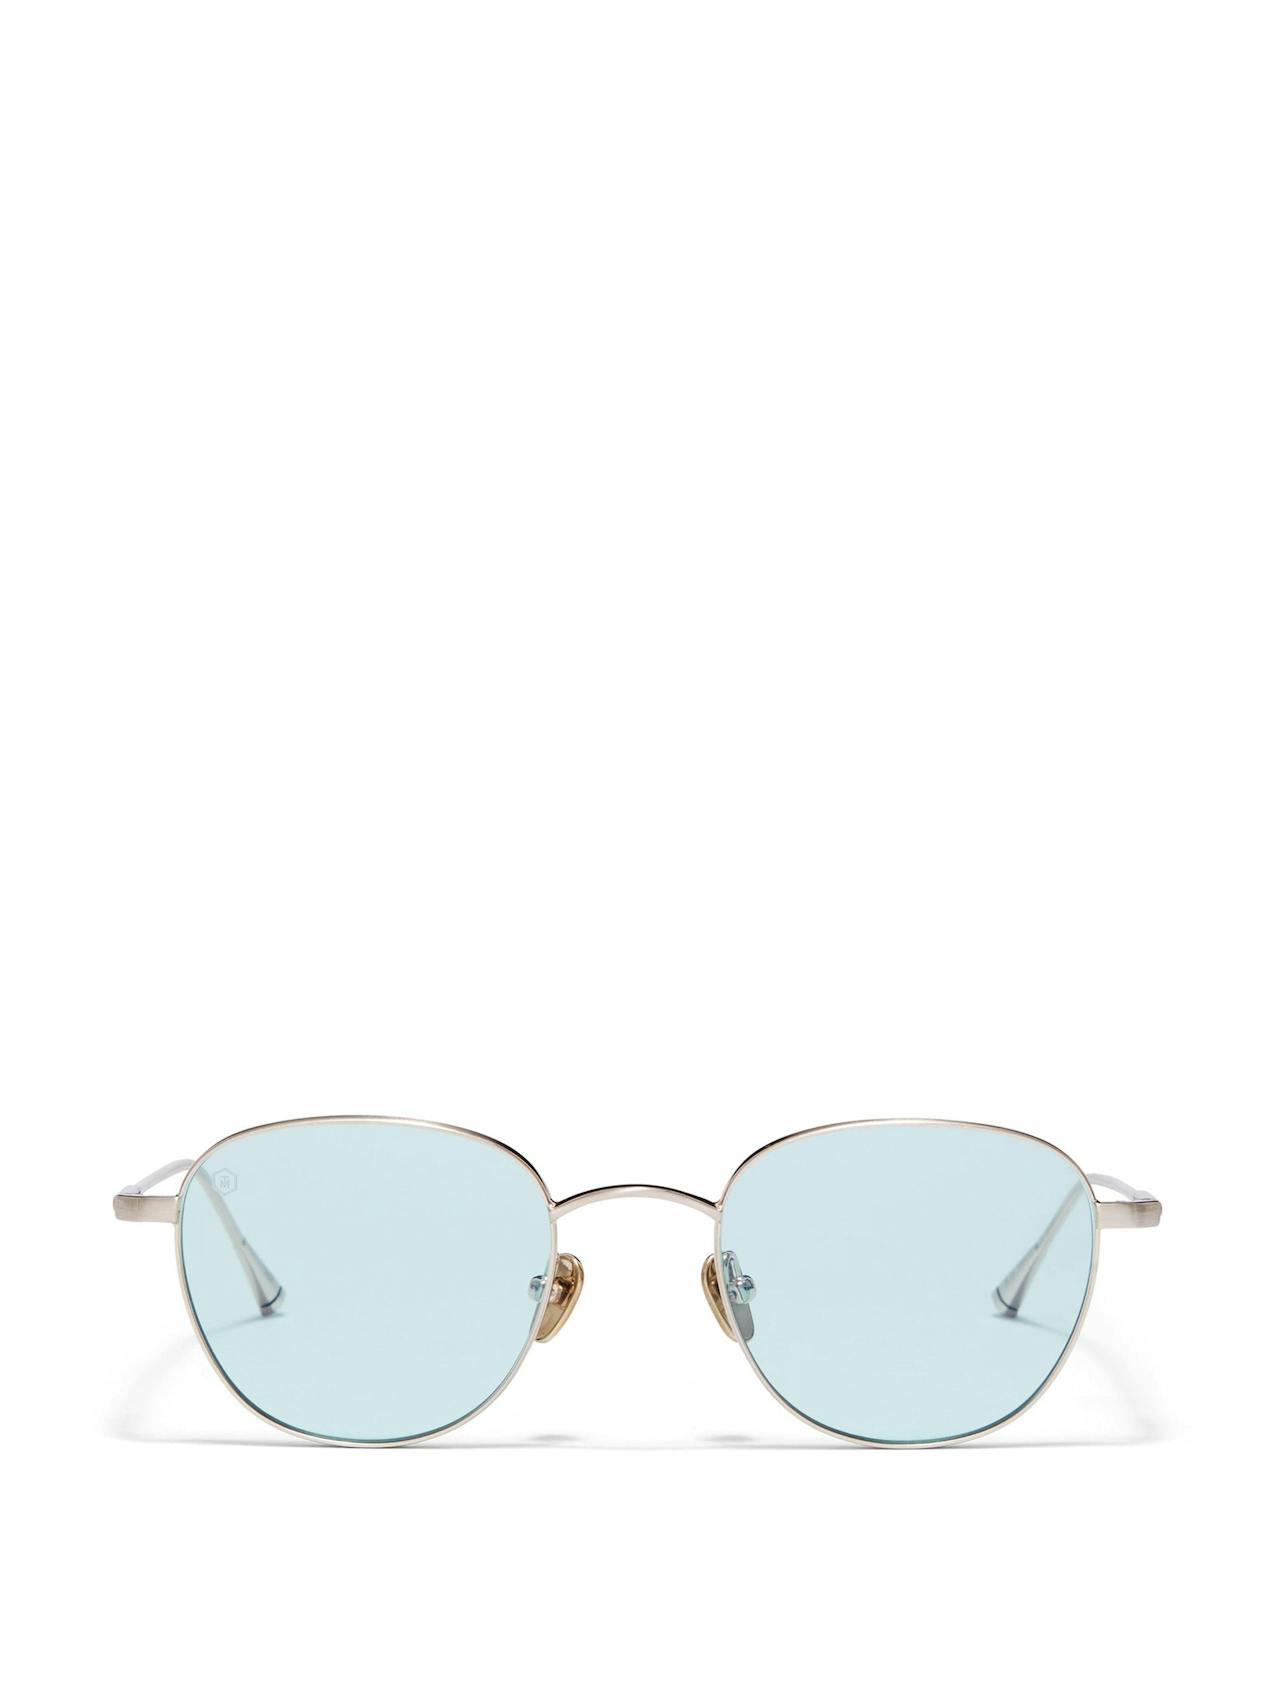 Durham sunglasses